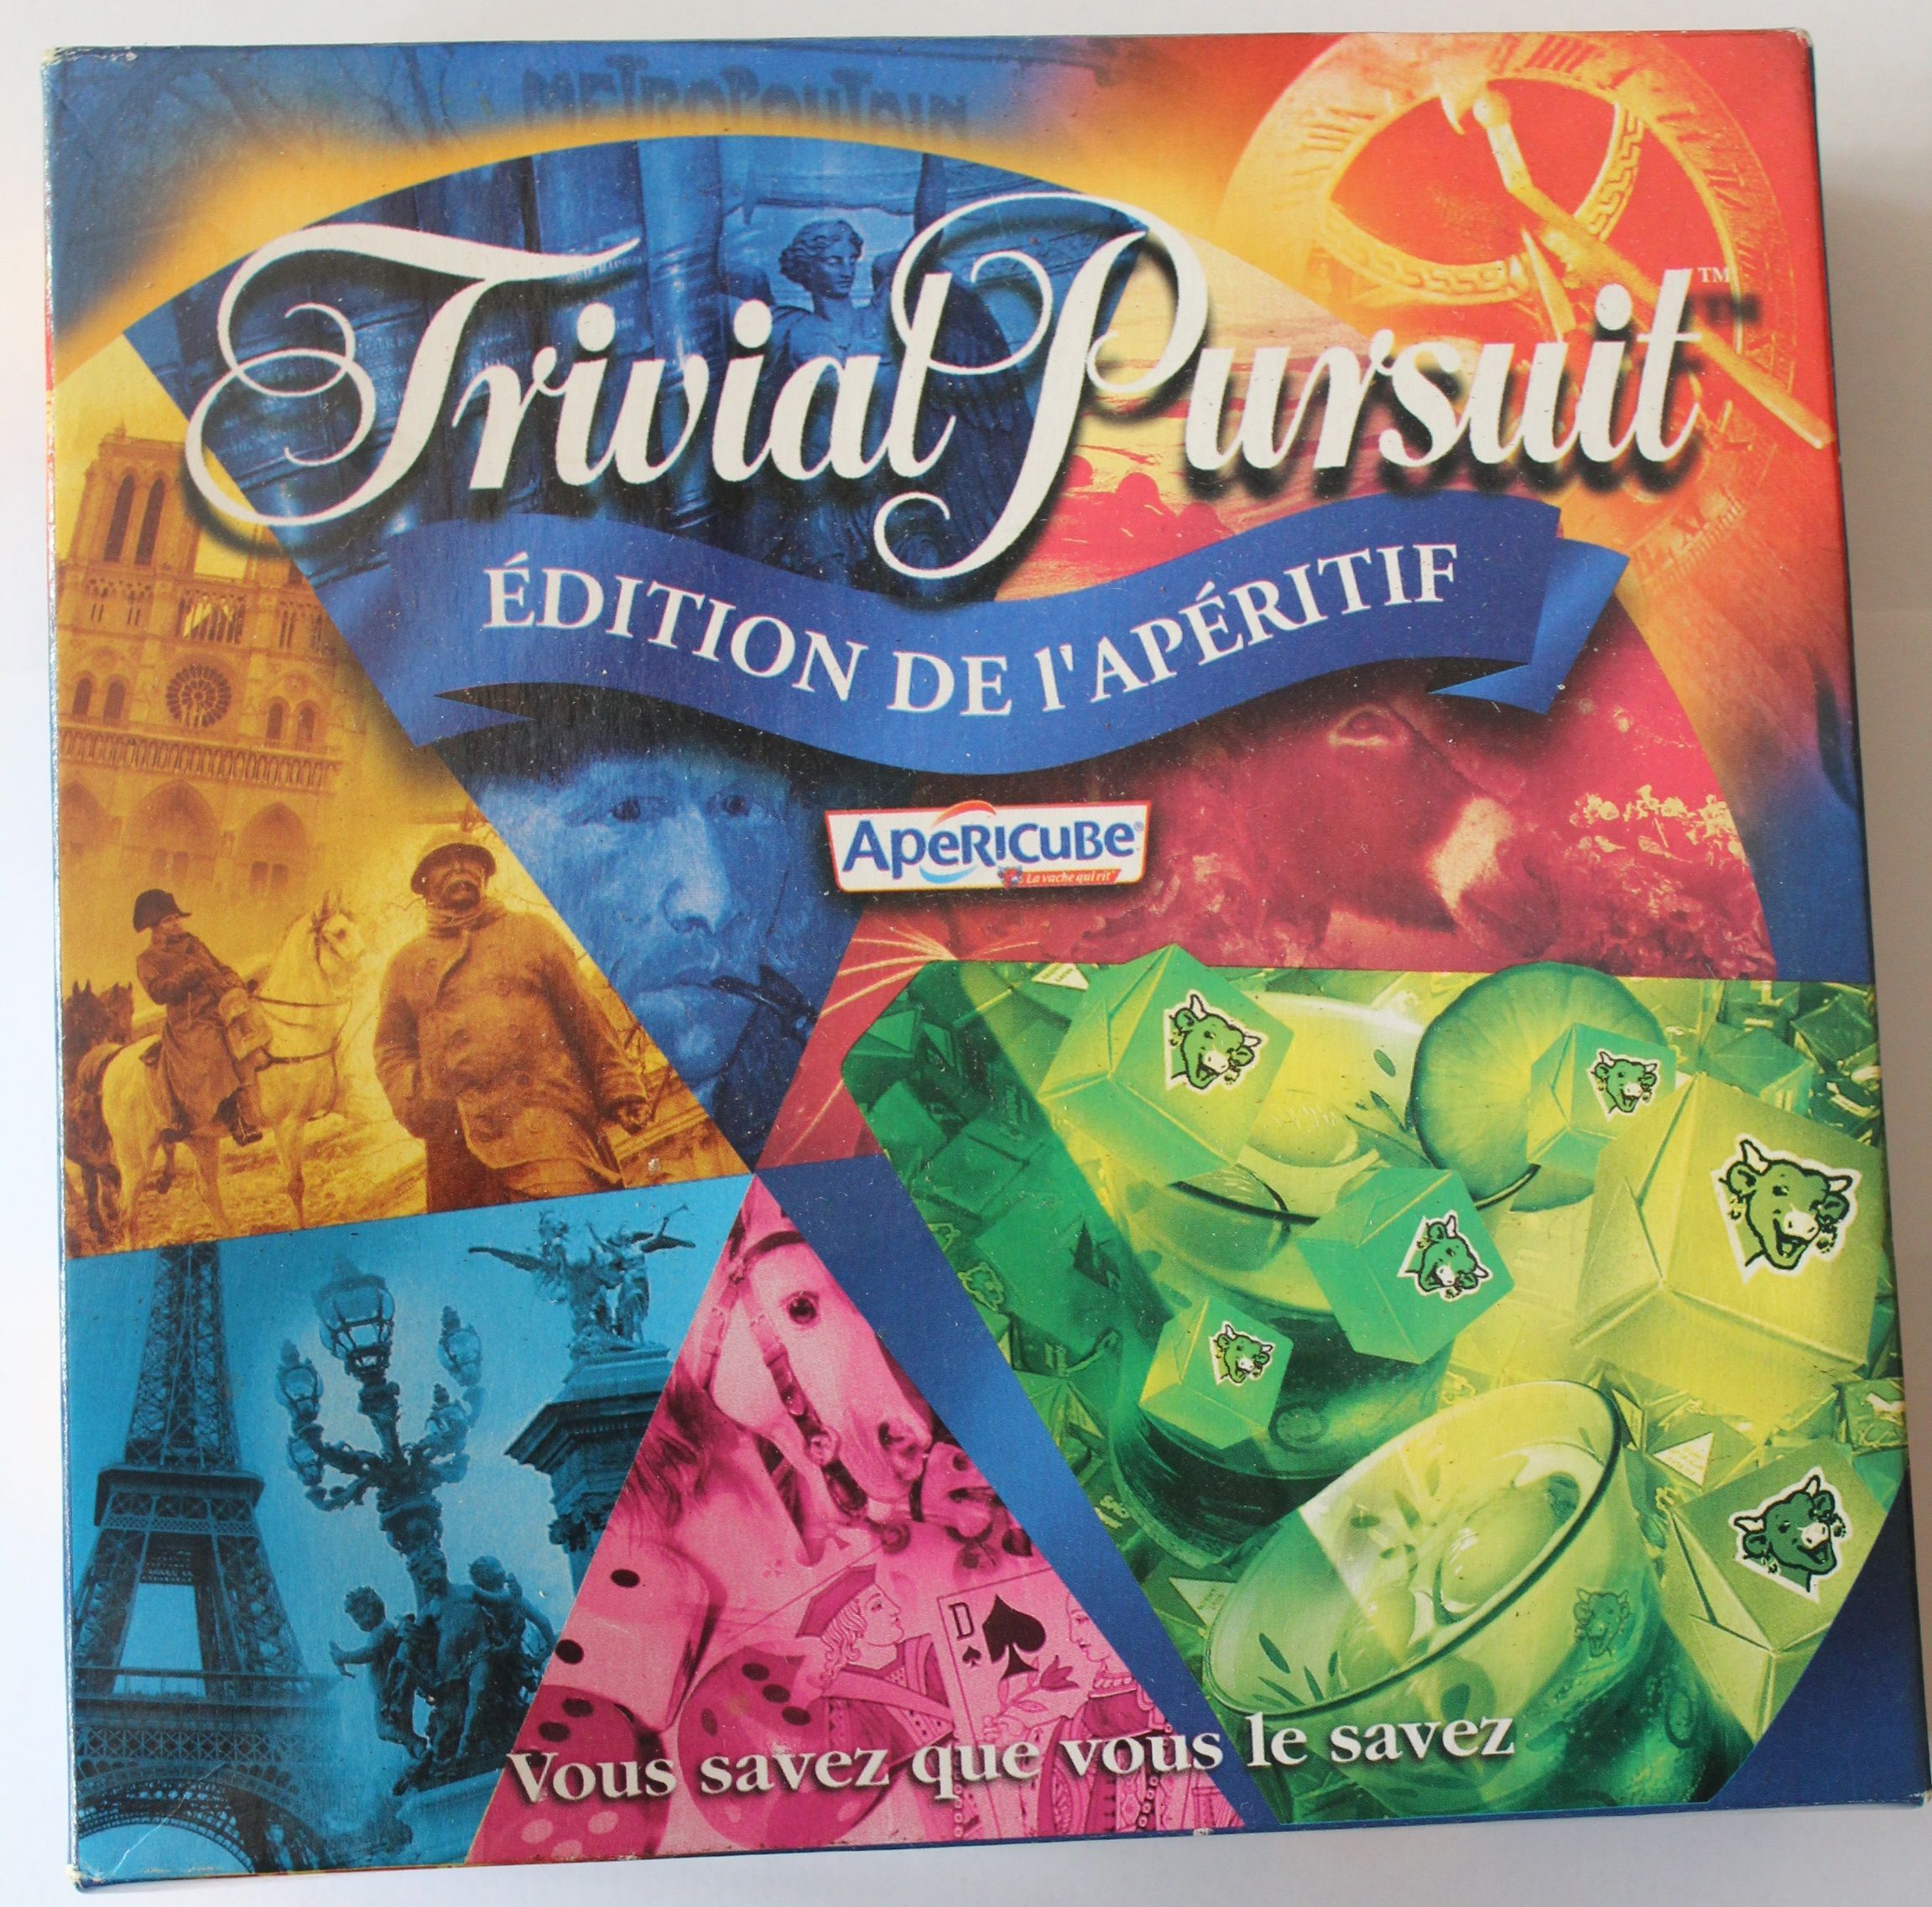 Trivial Pursuit: Edition de lapéritif Apéricube